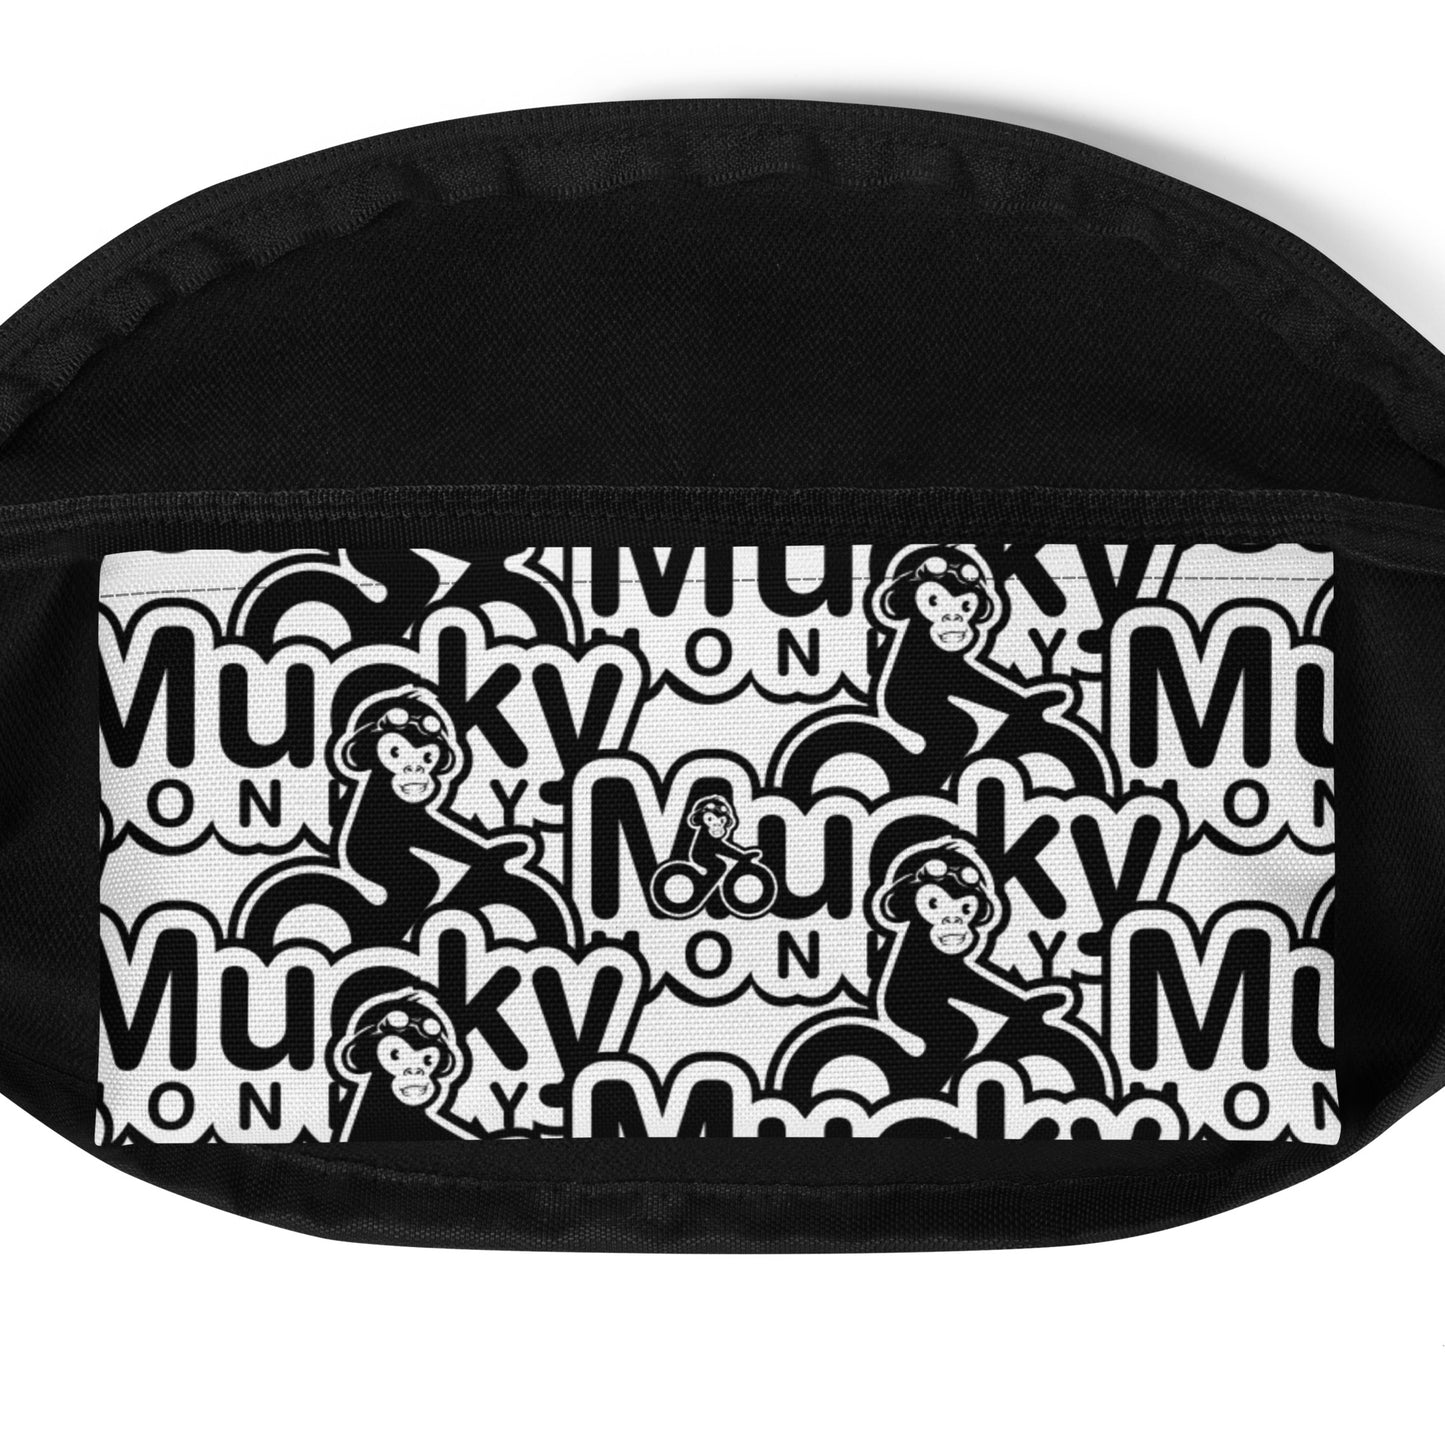 Mucky Monkey - Bum Bag